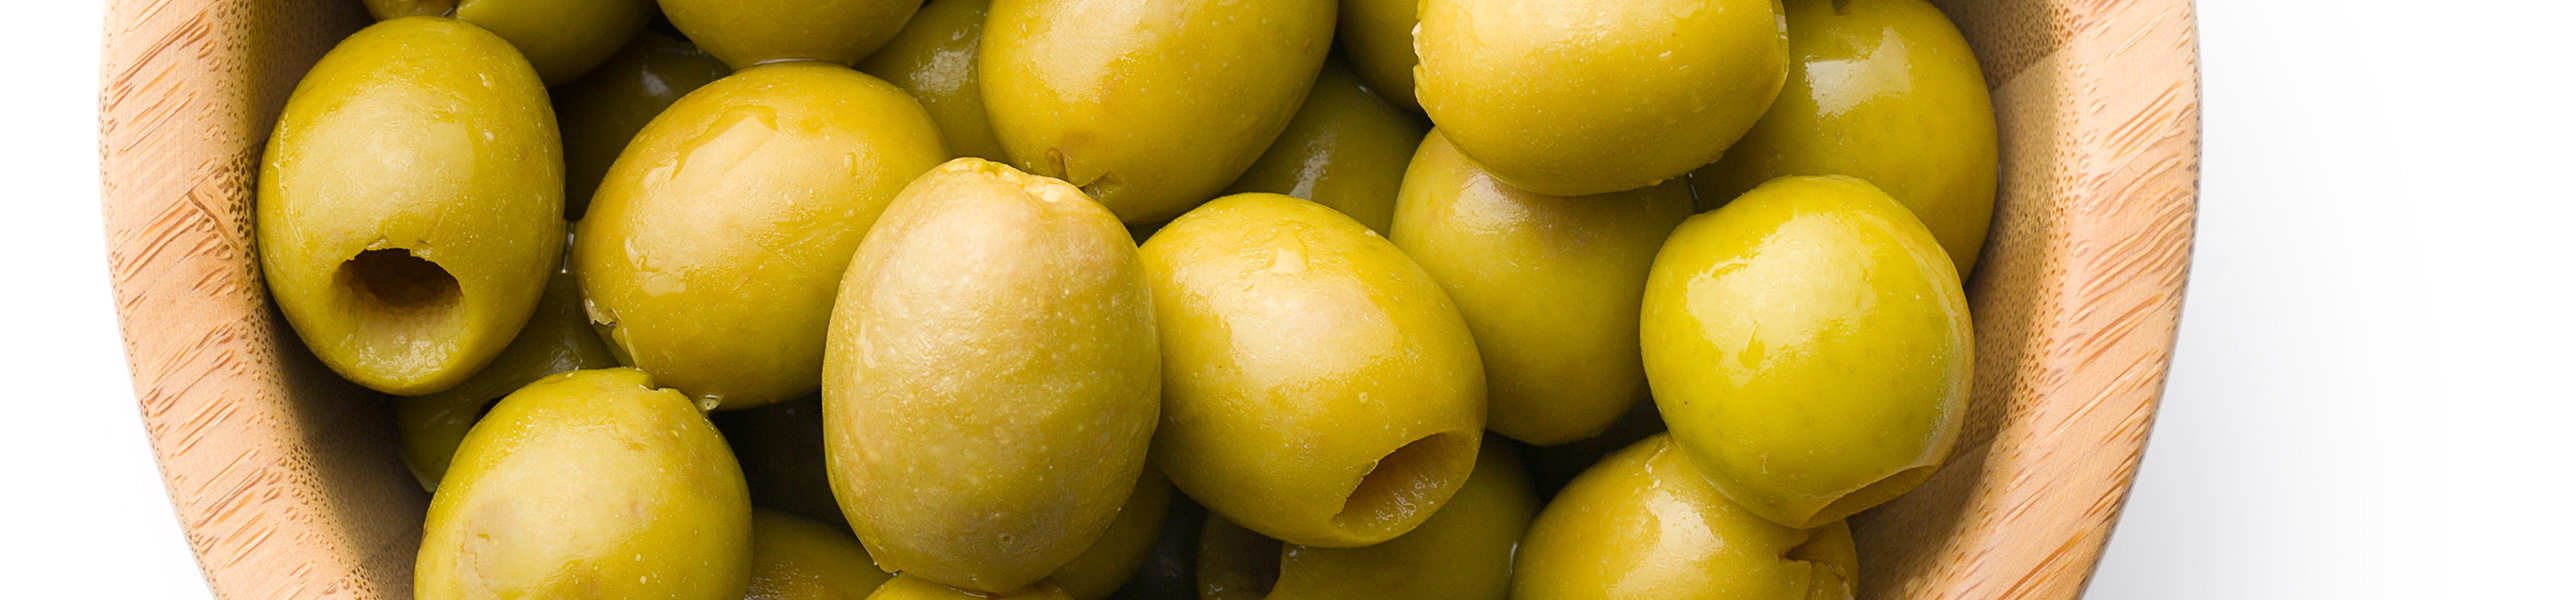 Olive Verdi denocciolate